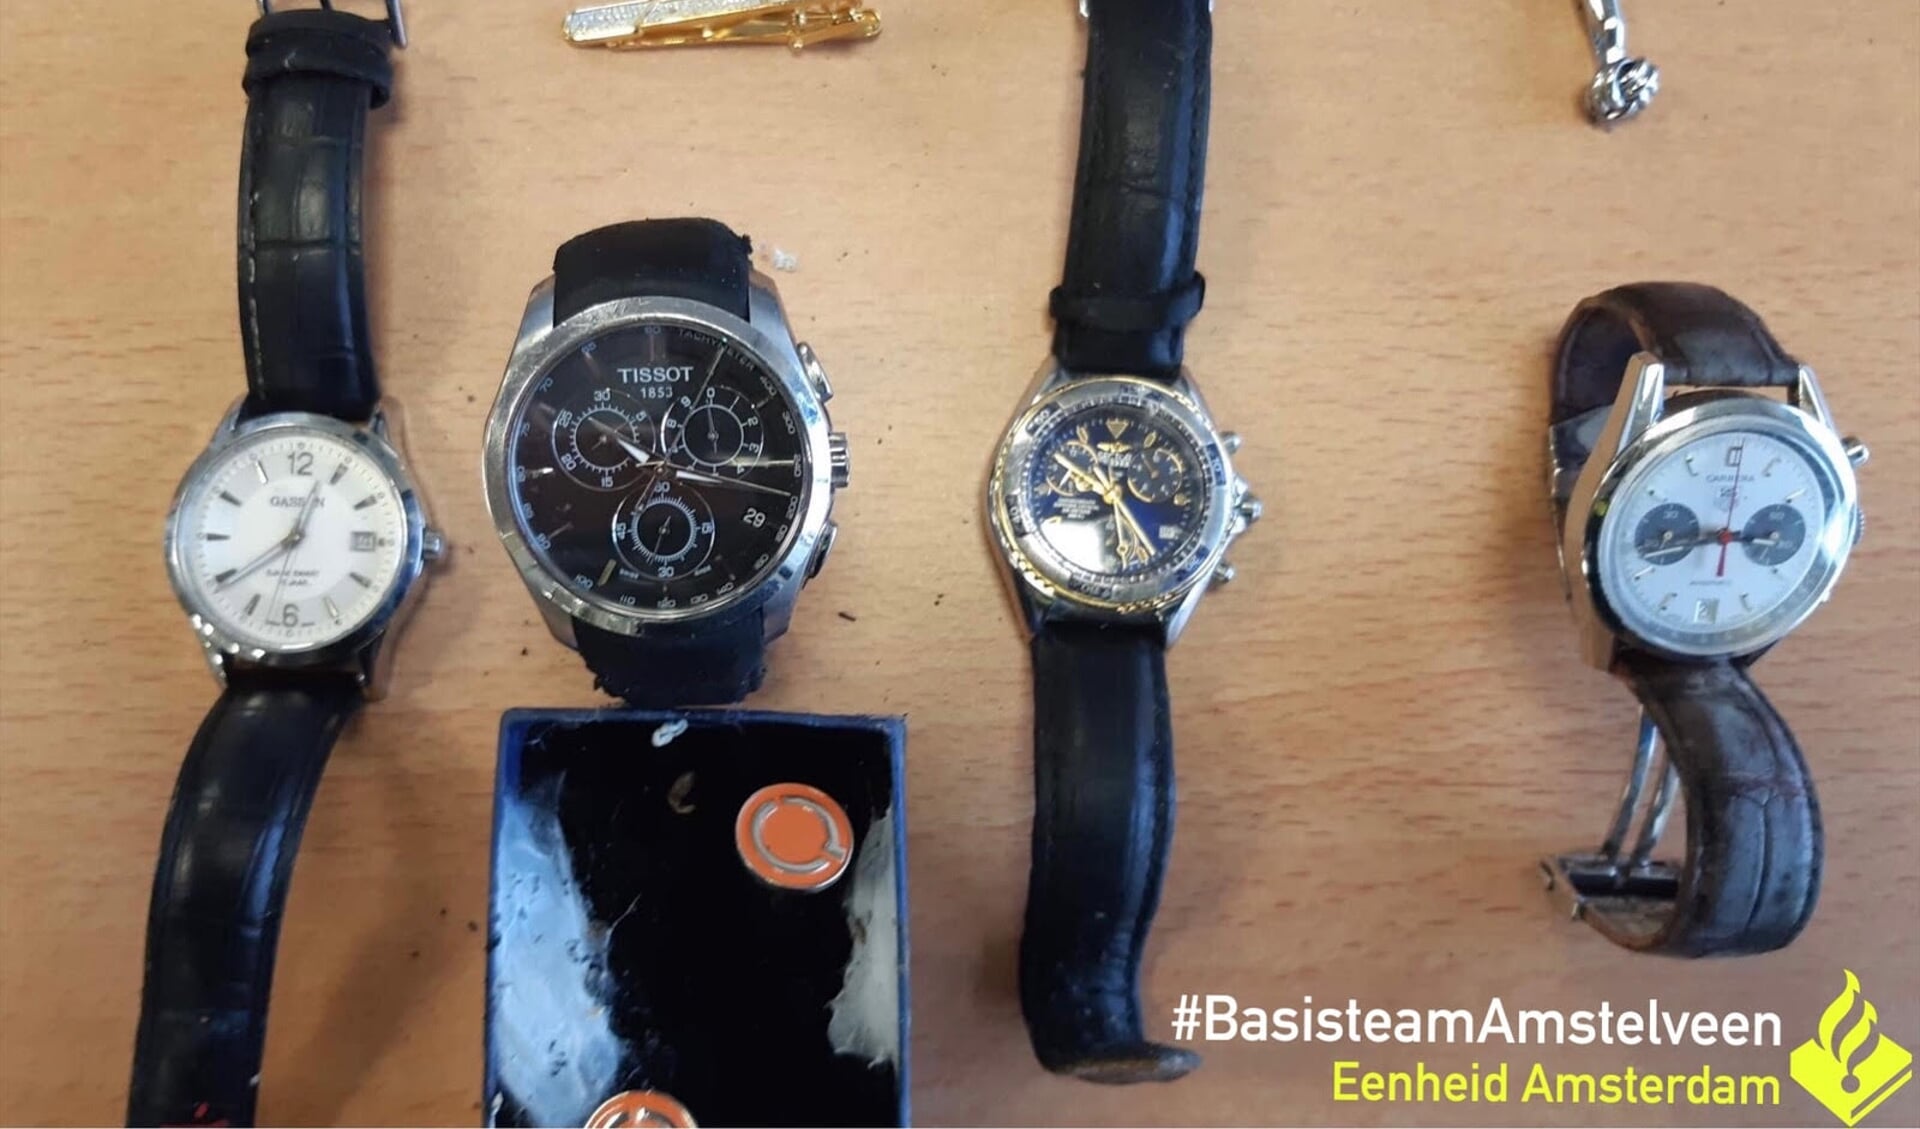 Horloges die zaterdag in een tas langs de Noorddammerweg werden aangetroffen.